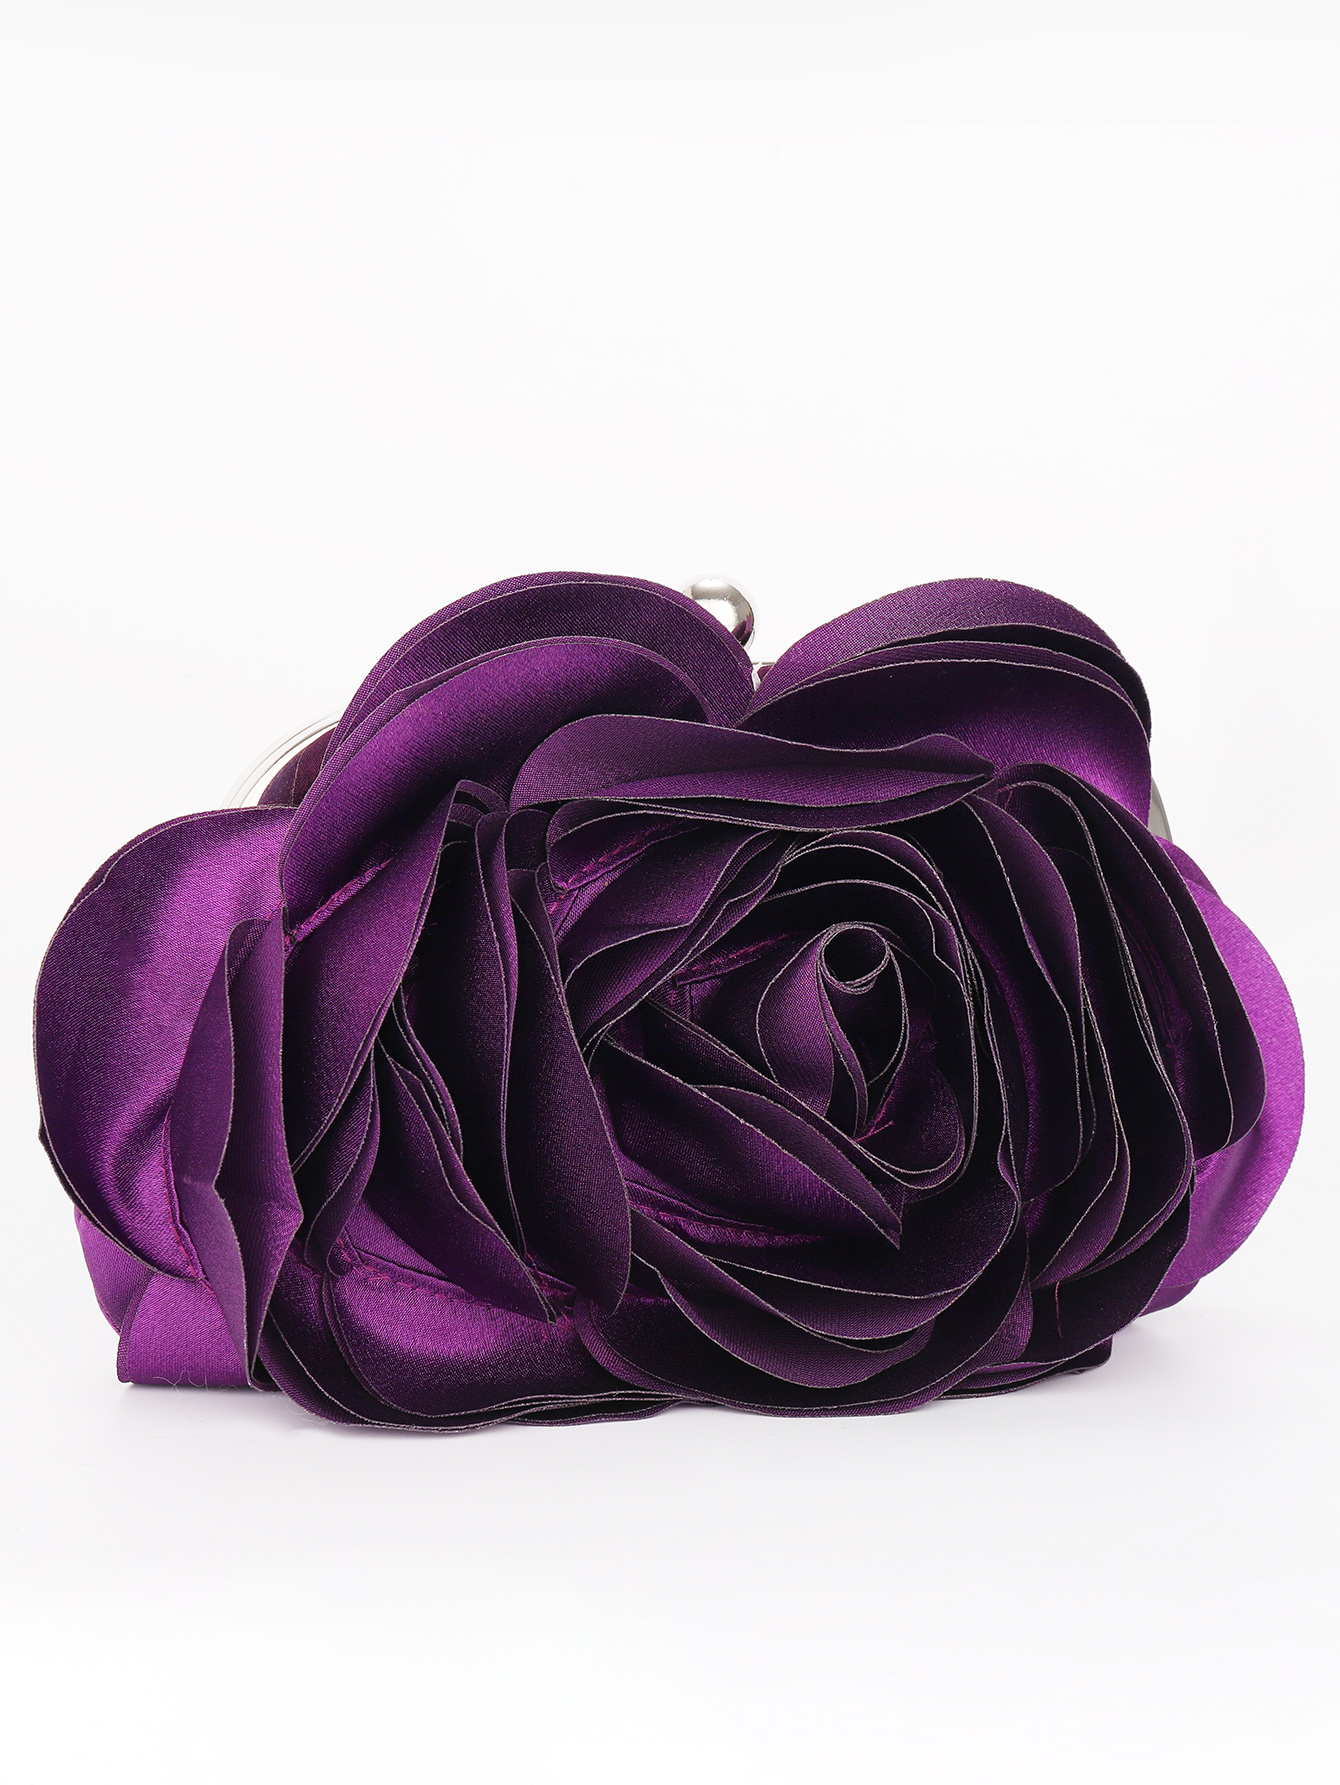 Вечерняя сумка с цветочным принтом, фиолетовый новый женский кошелек с крокодиловым узором сумка для денег модный кошелек сумка для телефона сумка клатч с отделением для карт cartera mujer